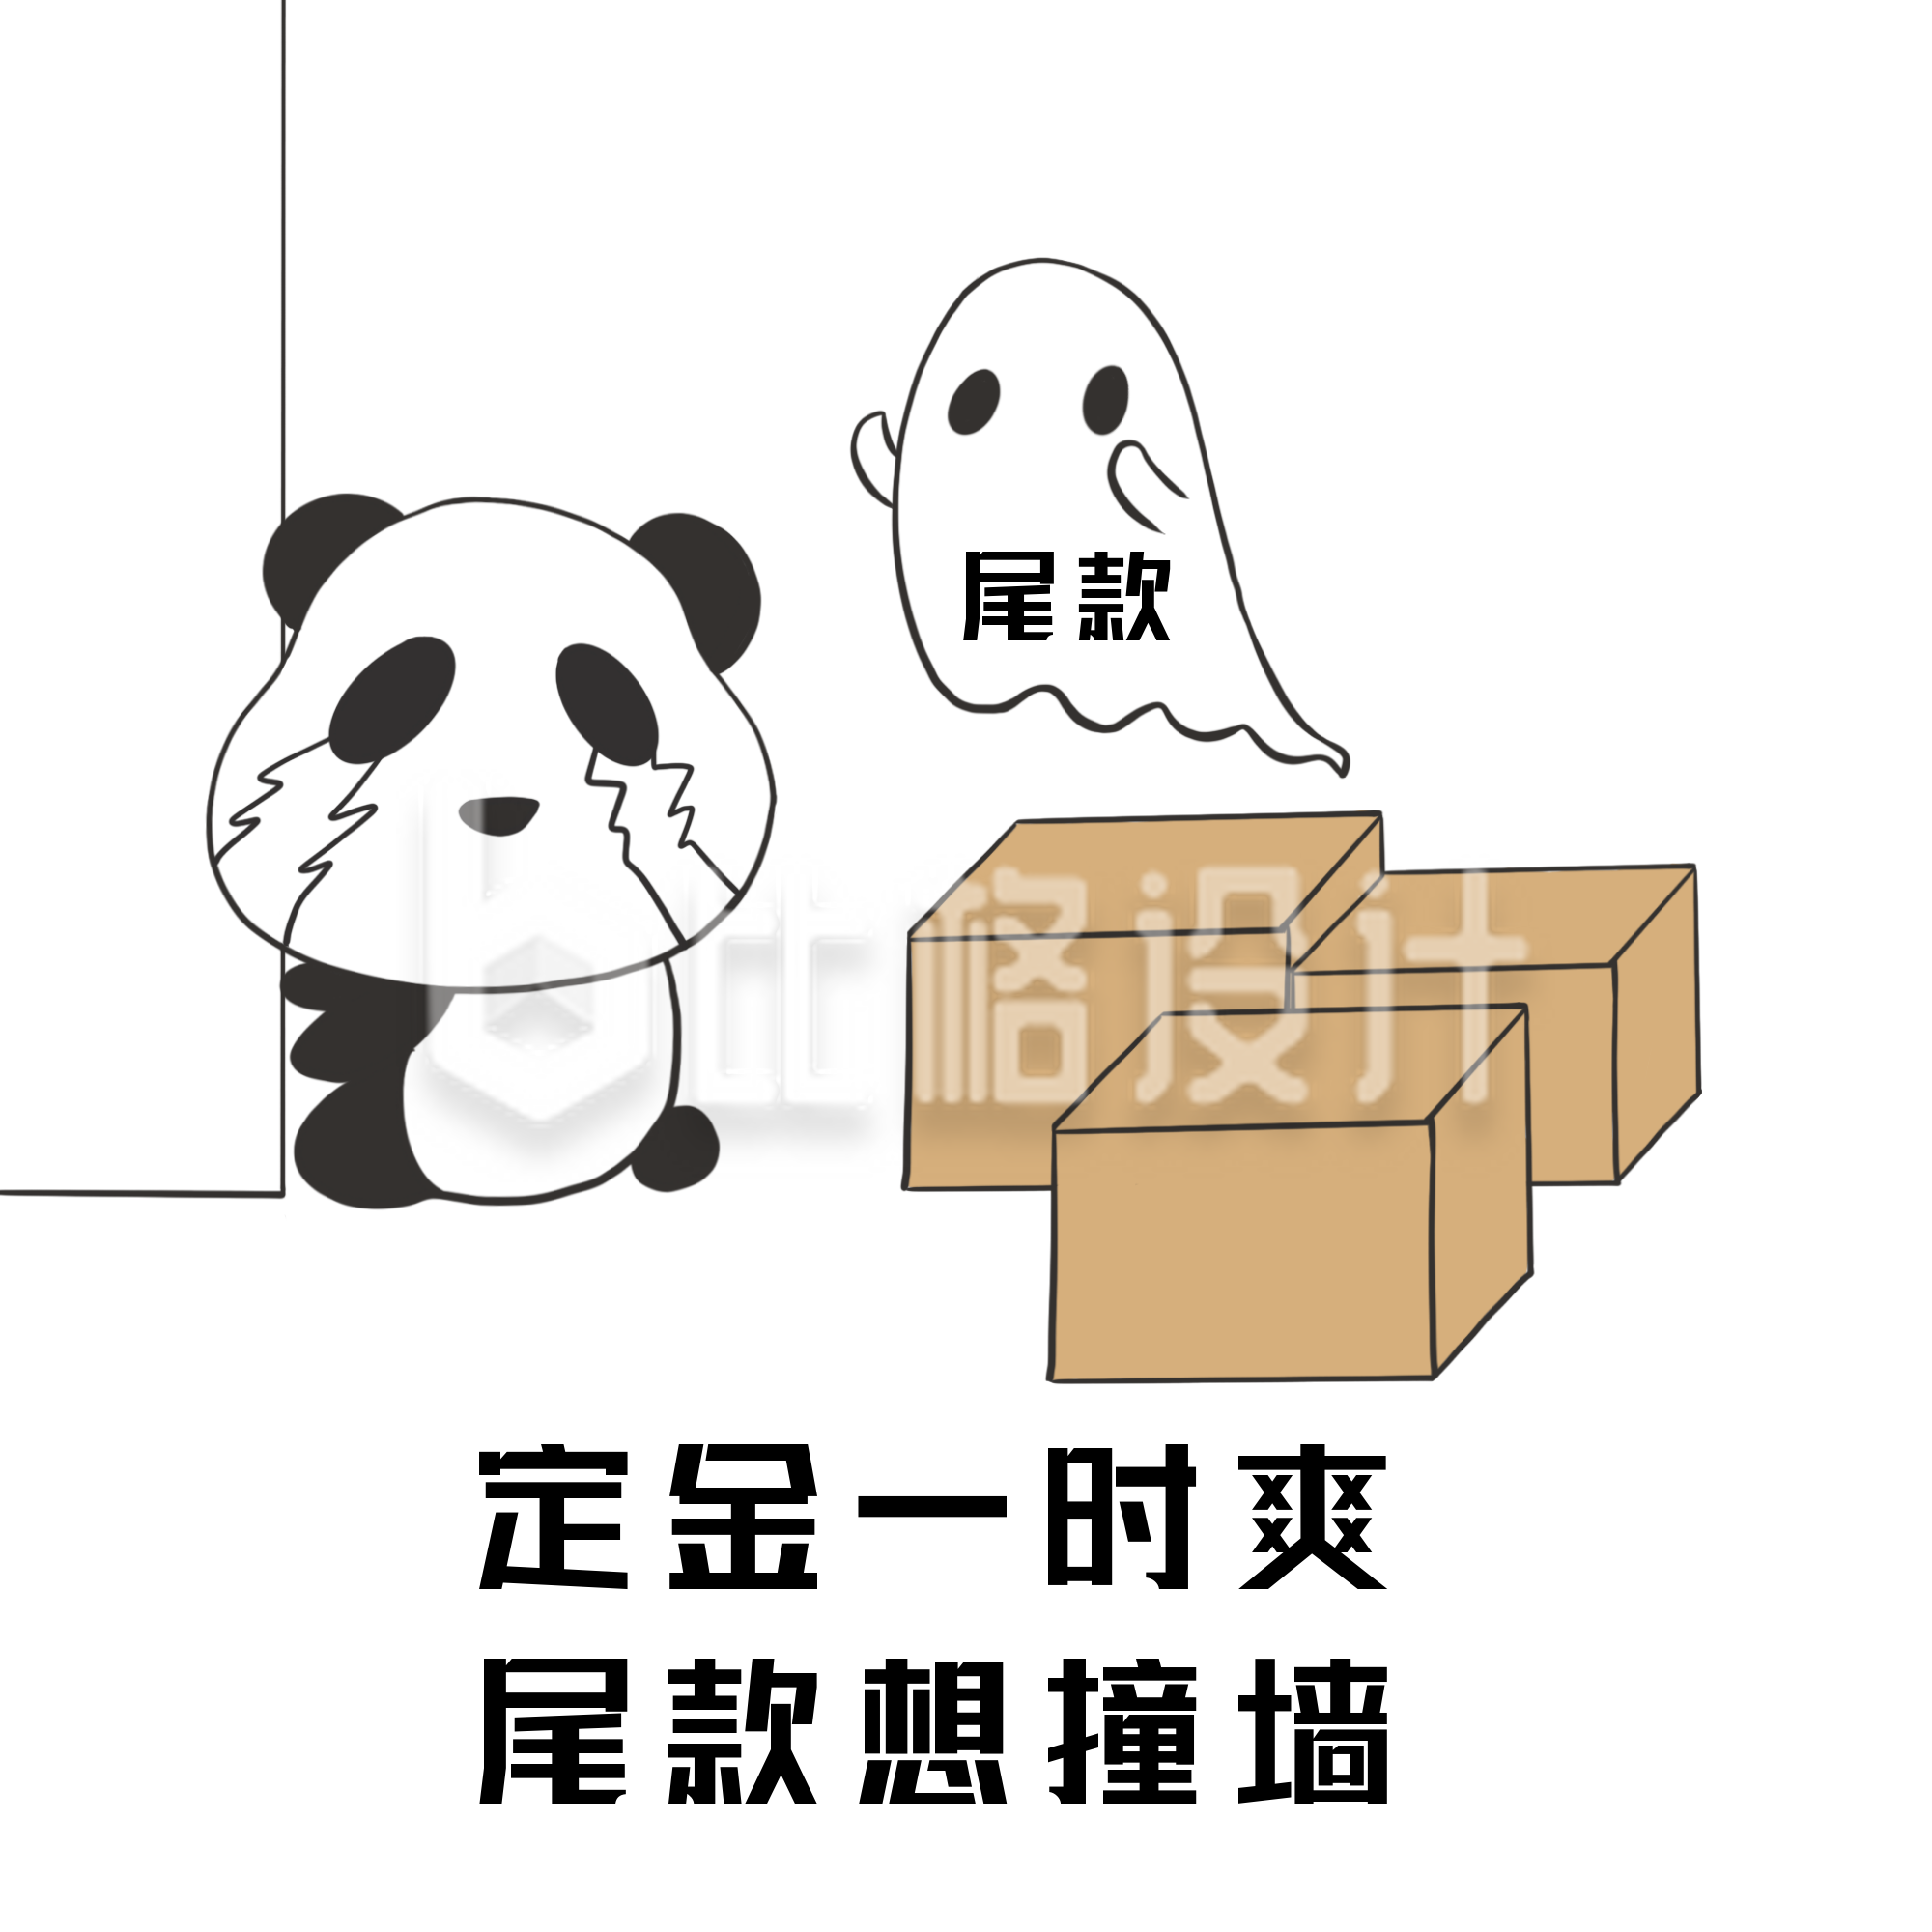 双十一购物熊猫可爱趣味表情包